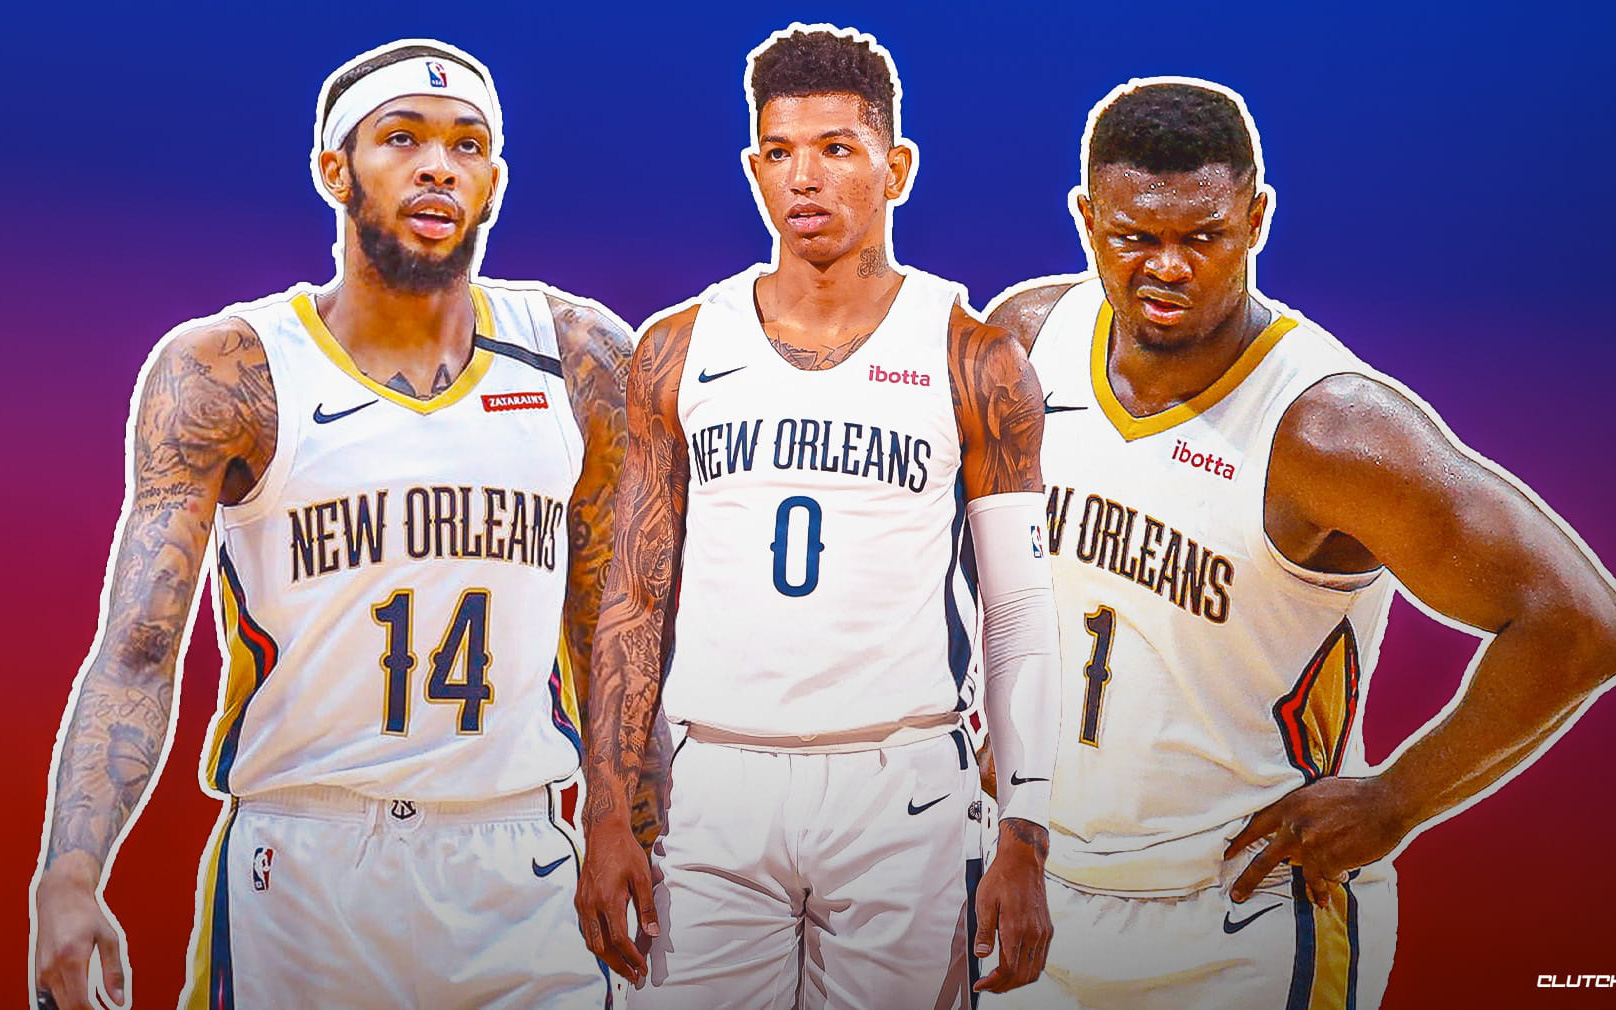 Dương tính với chất cấm, tiền phong trẻ của New Orleans Pelicans bị NBA cấm thi đấu 25 trận